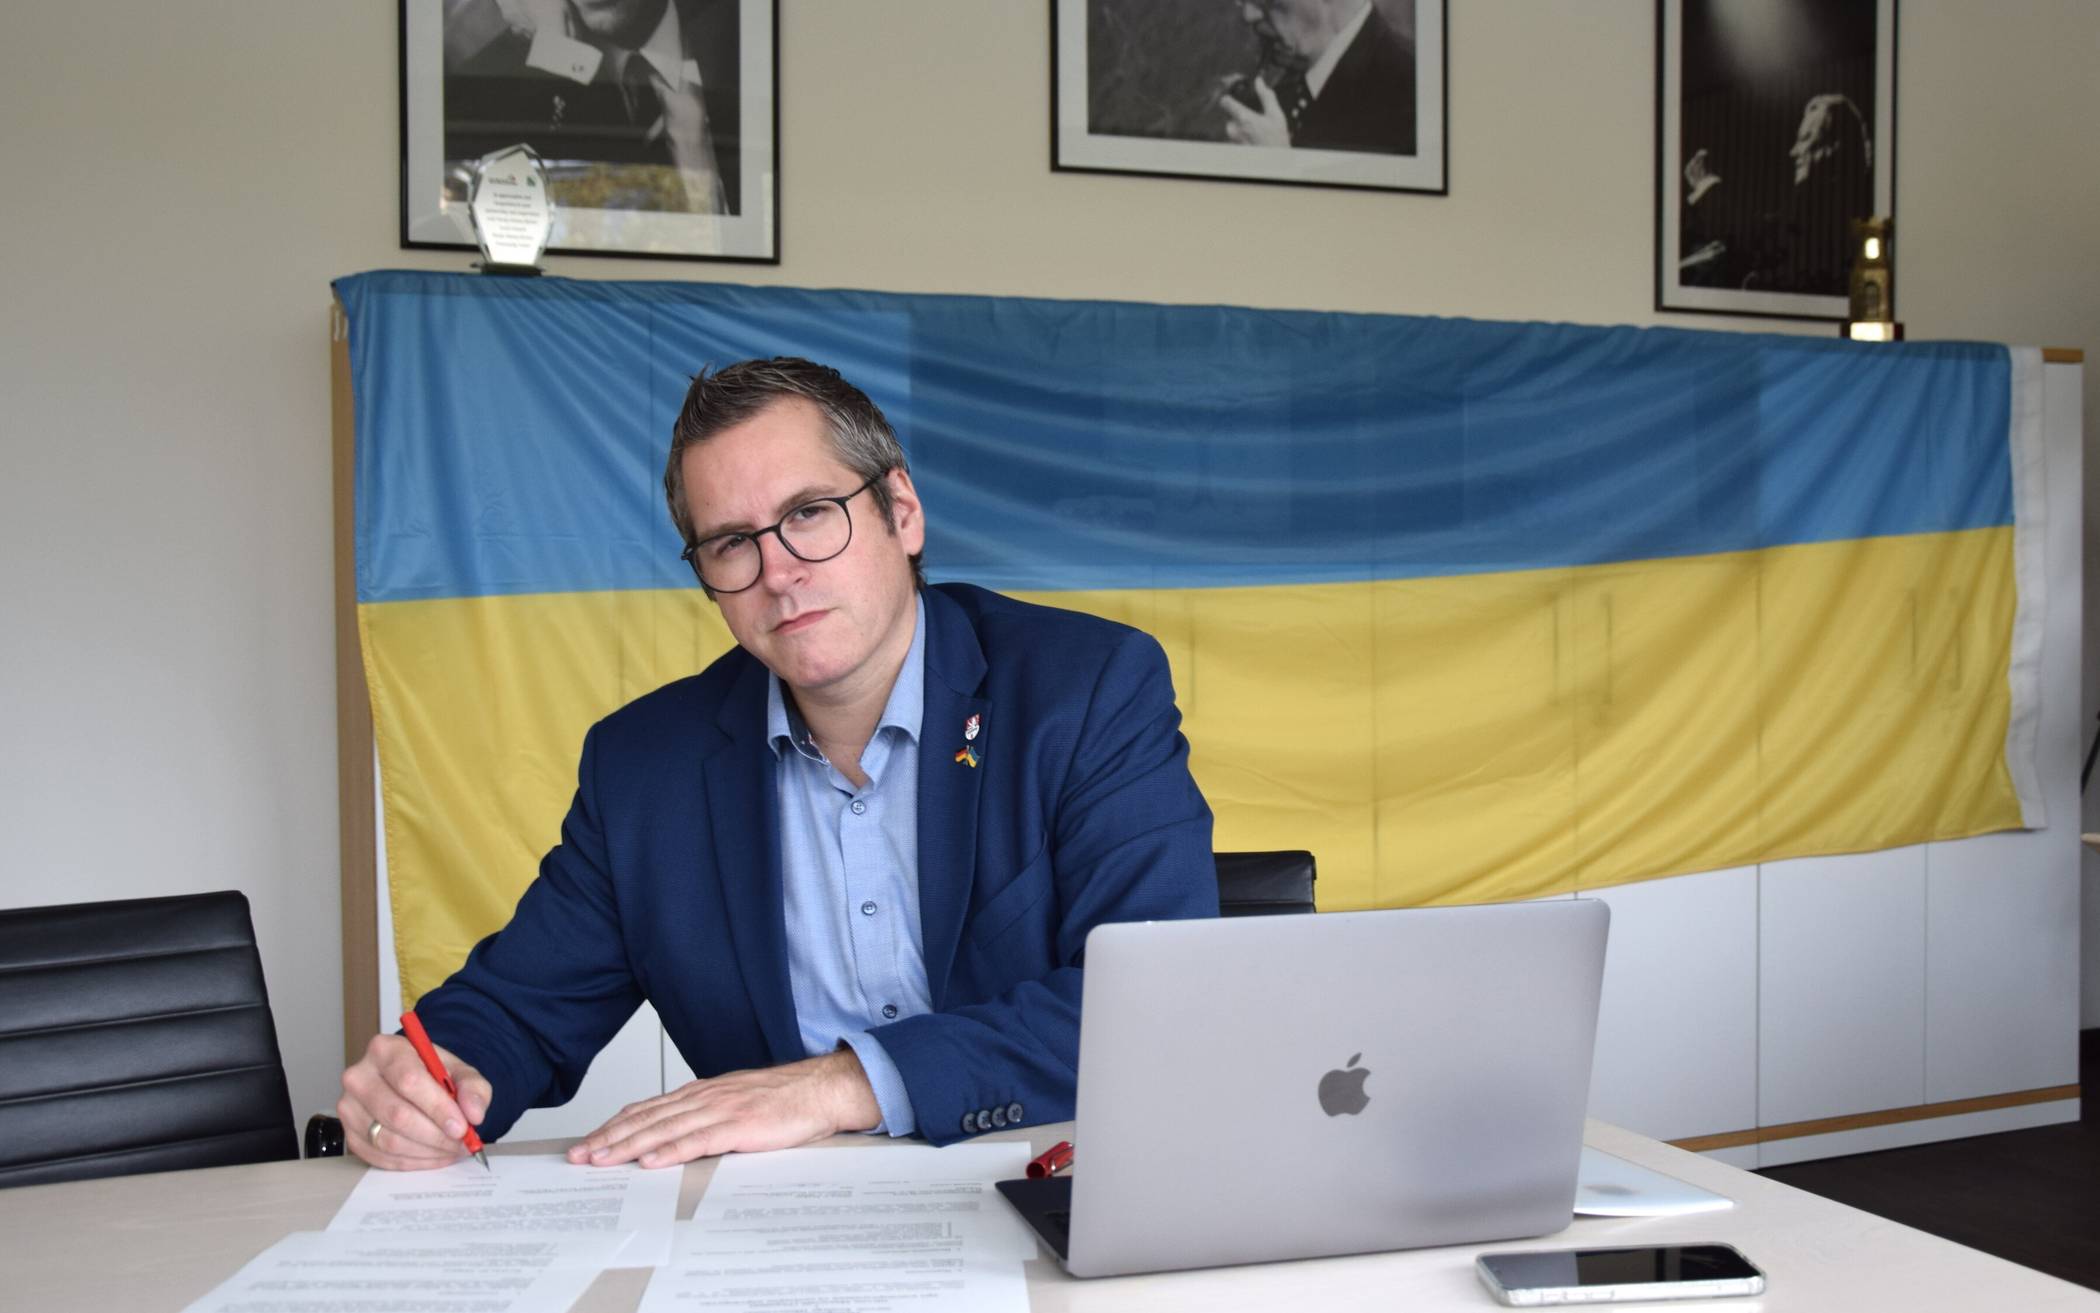  Bedburgs Bürgermeister Sascha Solbach bei der Vertragsunterzeichnung der Solidaritätspartnerschaft mit der ukrainischen Großstadt Mykolajiw. 